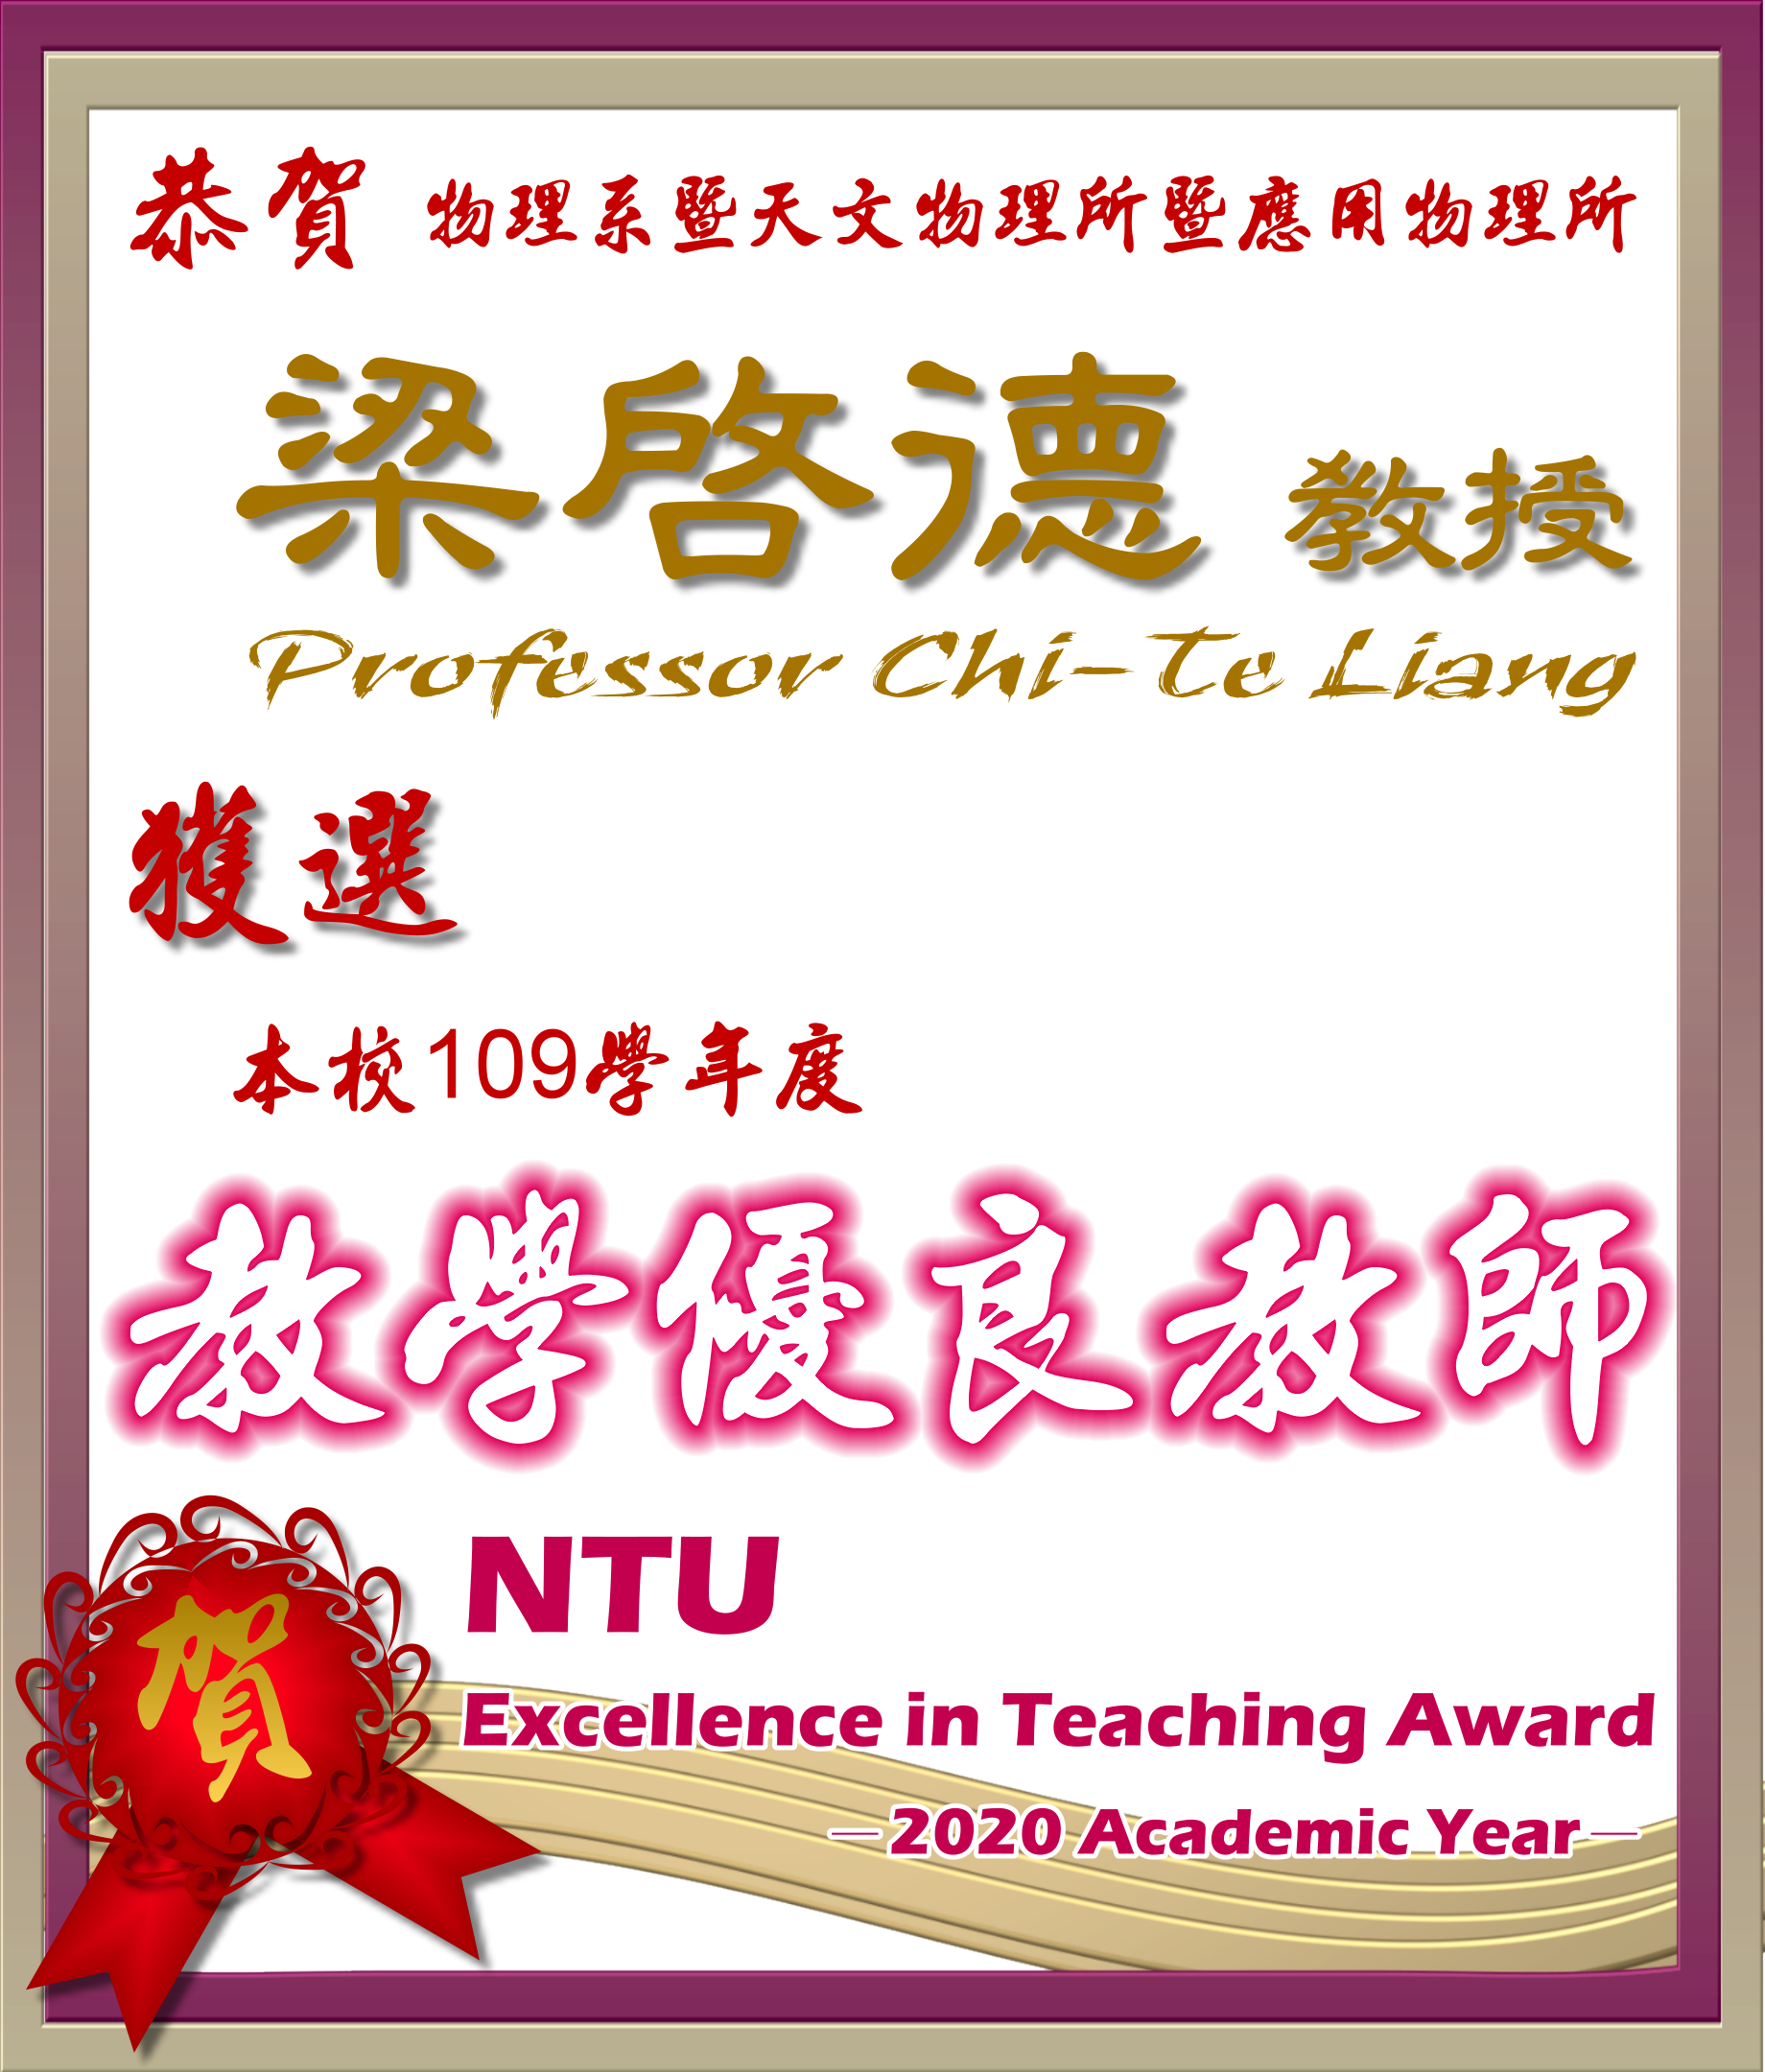 《賀》本系 梁啟德 教授 Prof. Chi-Te Liang 獲選 109學年度《教學優良教師》(NTU Excellence in Teaching Award)